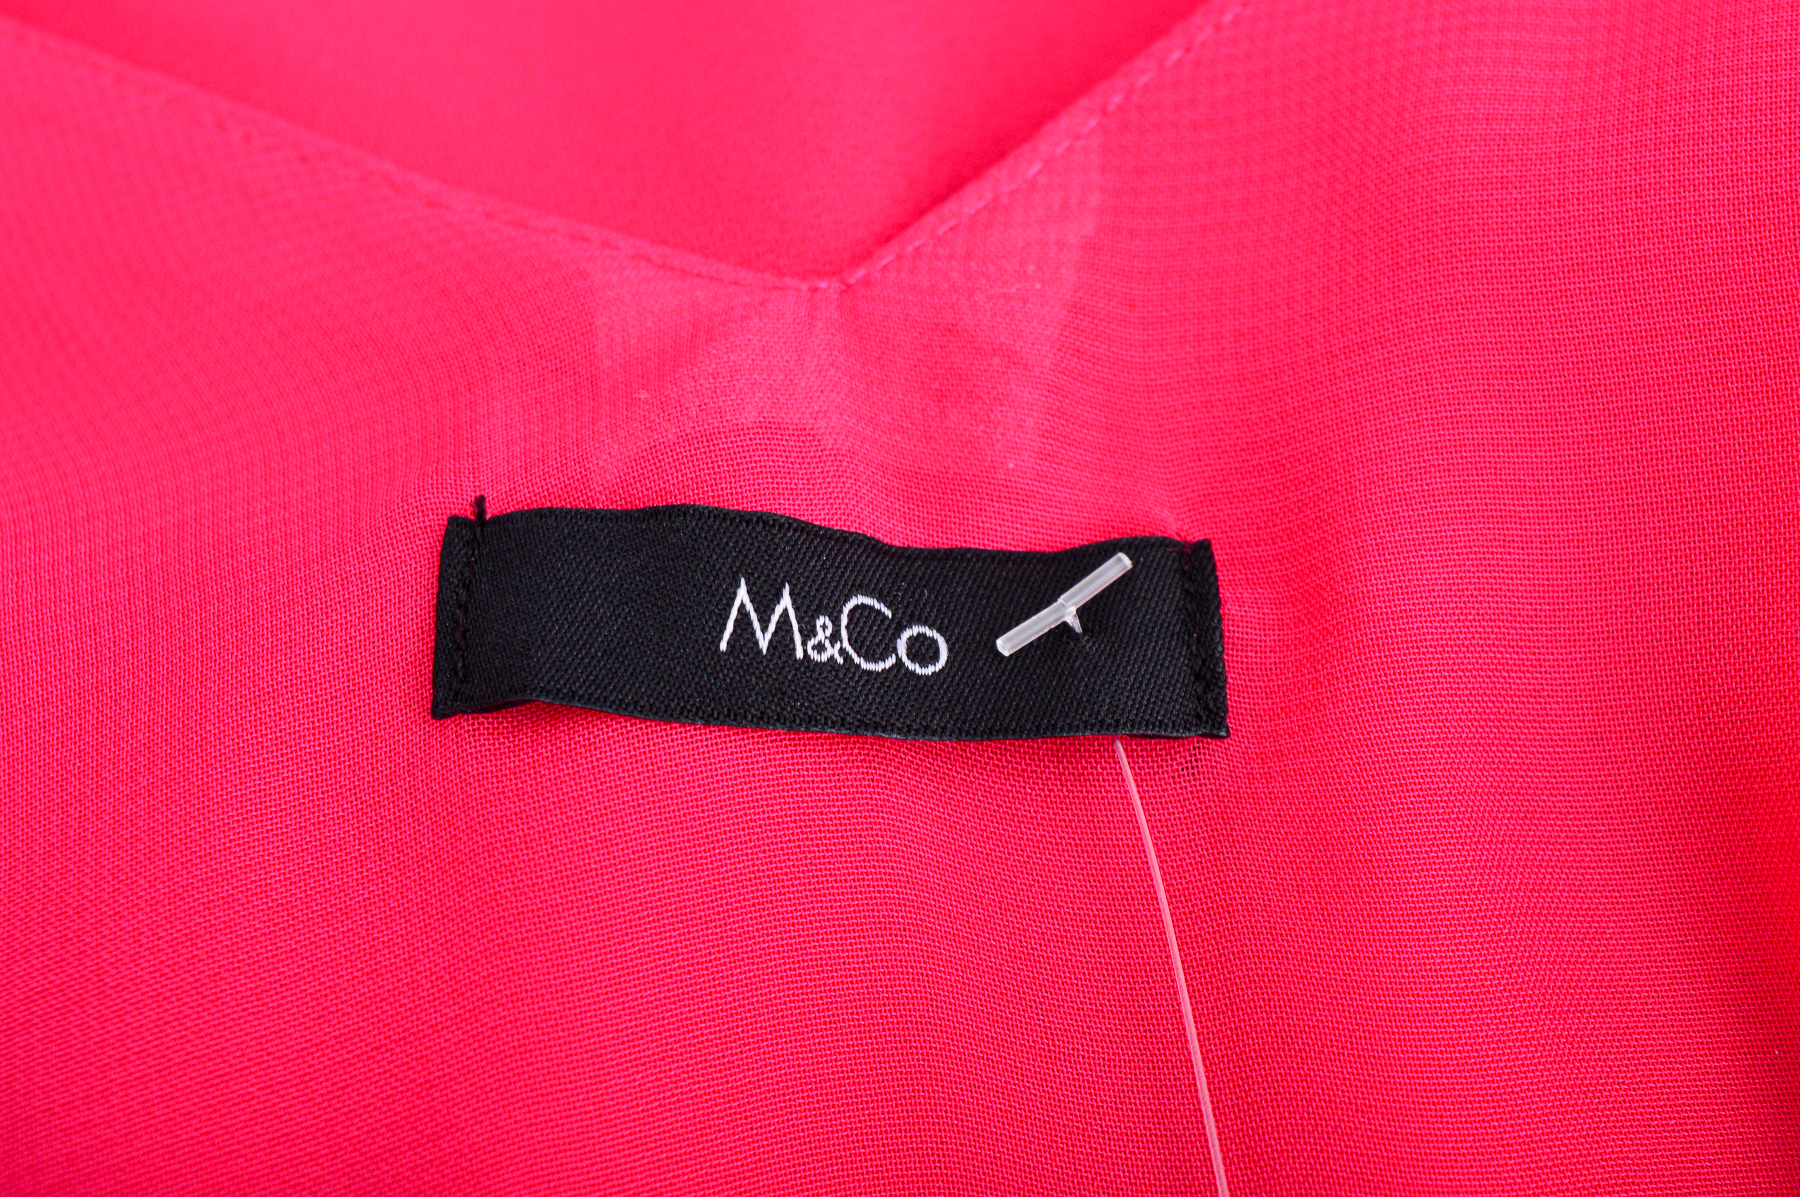 Women's shirt - M&Co. - 2